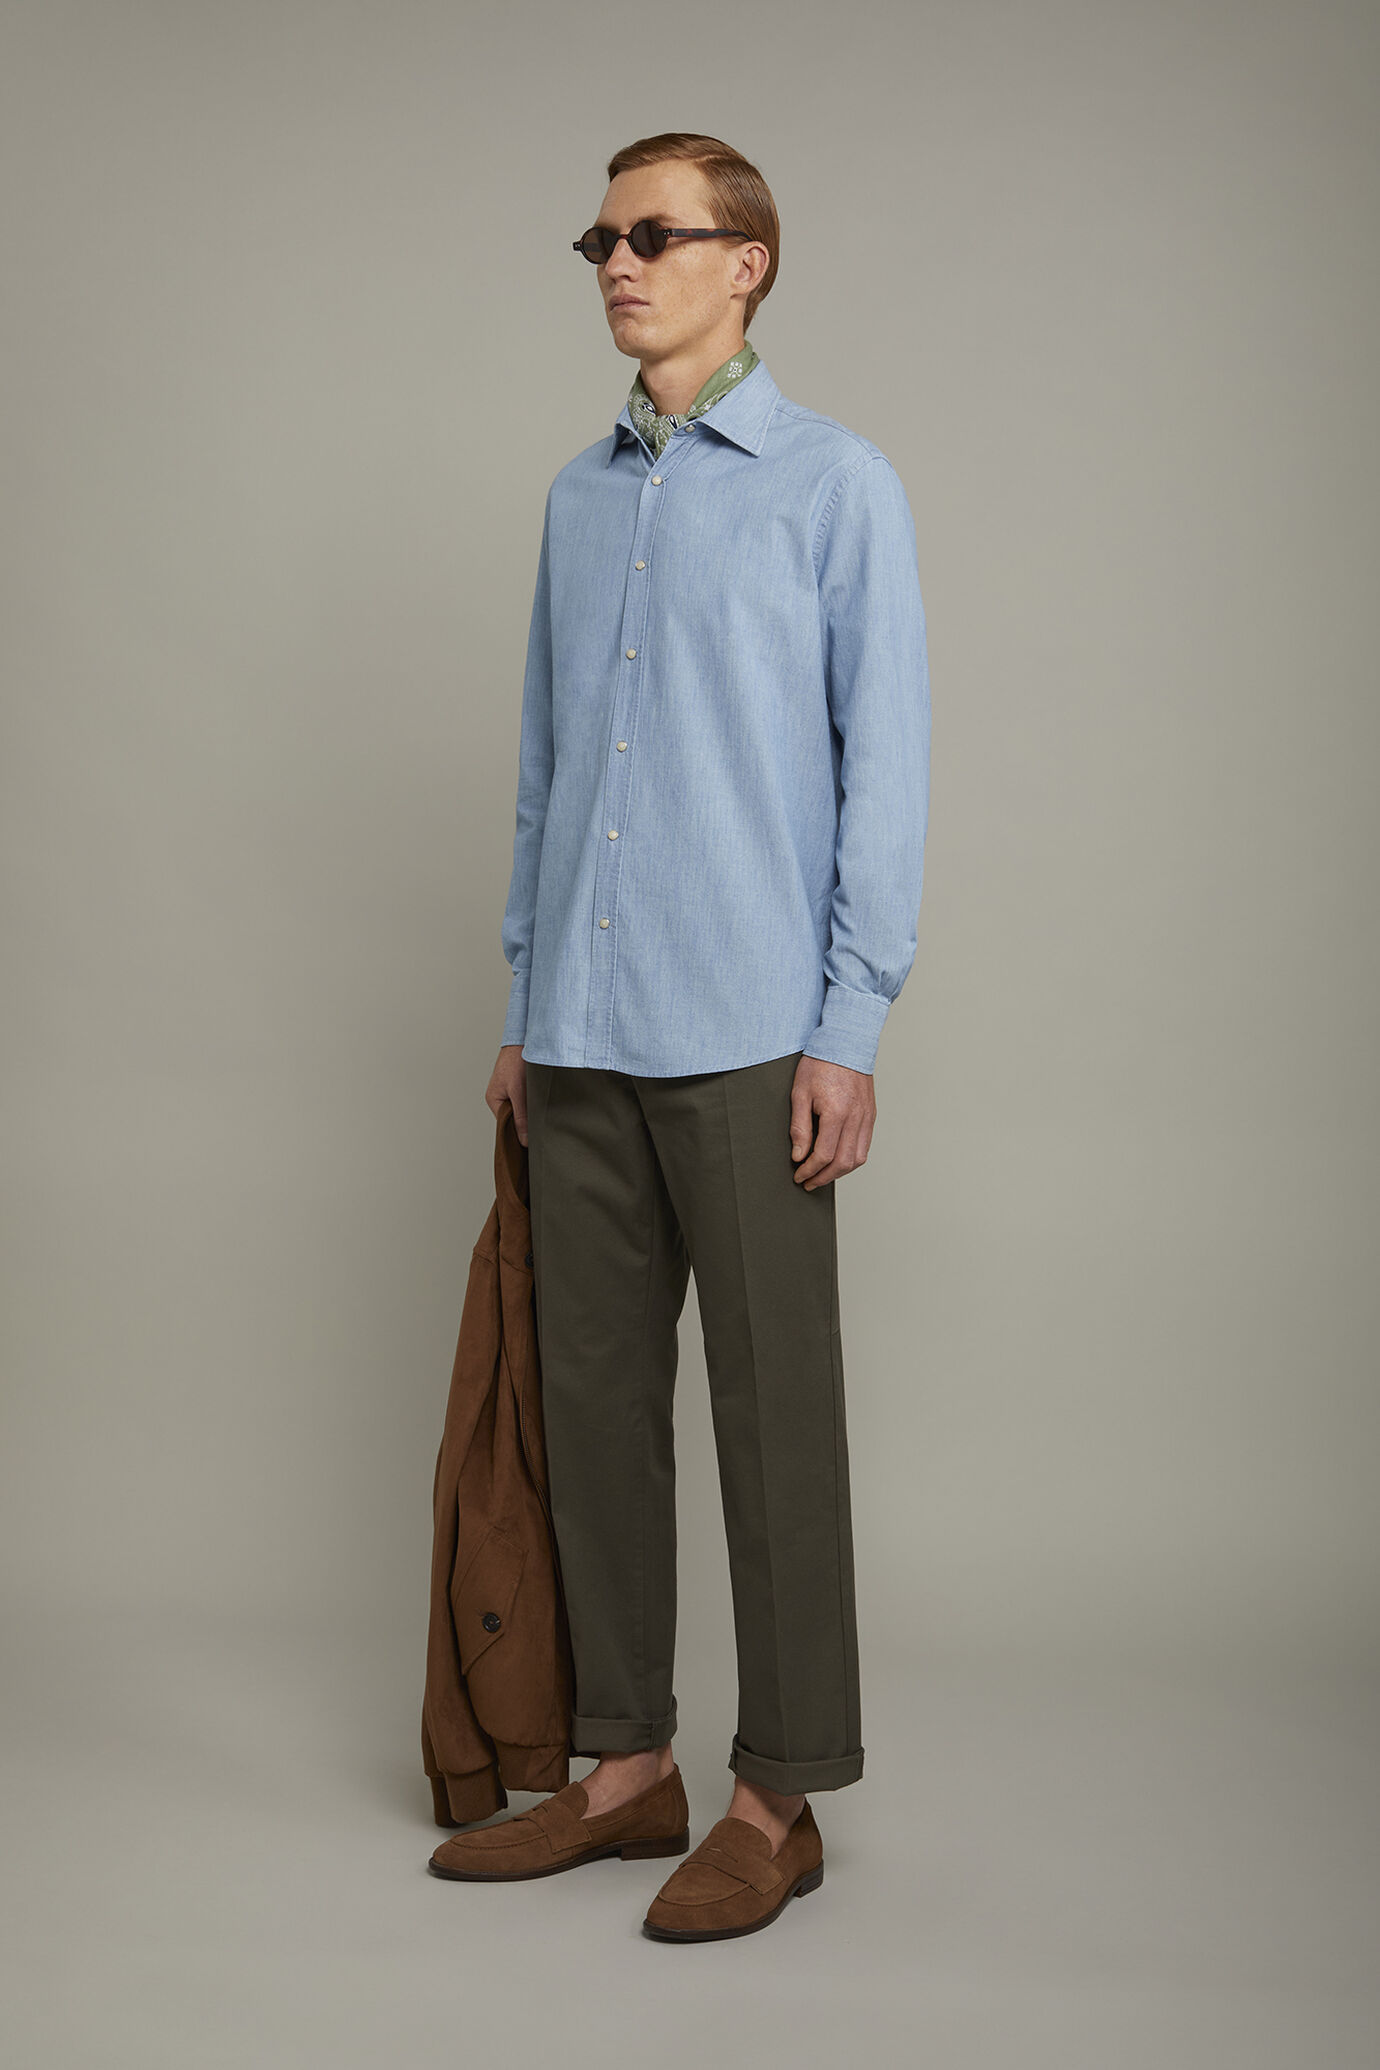 Camicia casual uomo collo classico 100% cotone tessuto chambray denim chiaro comfort fit image number 1